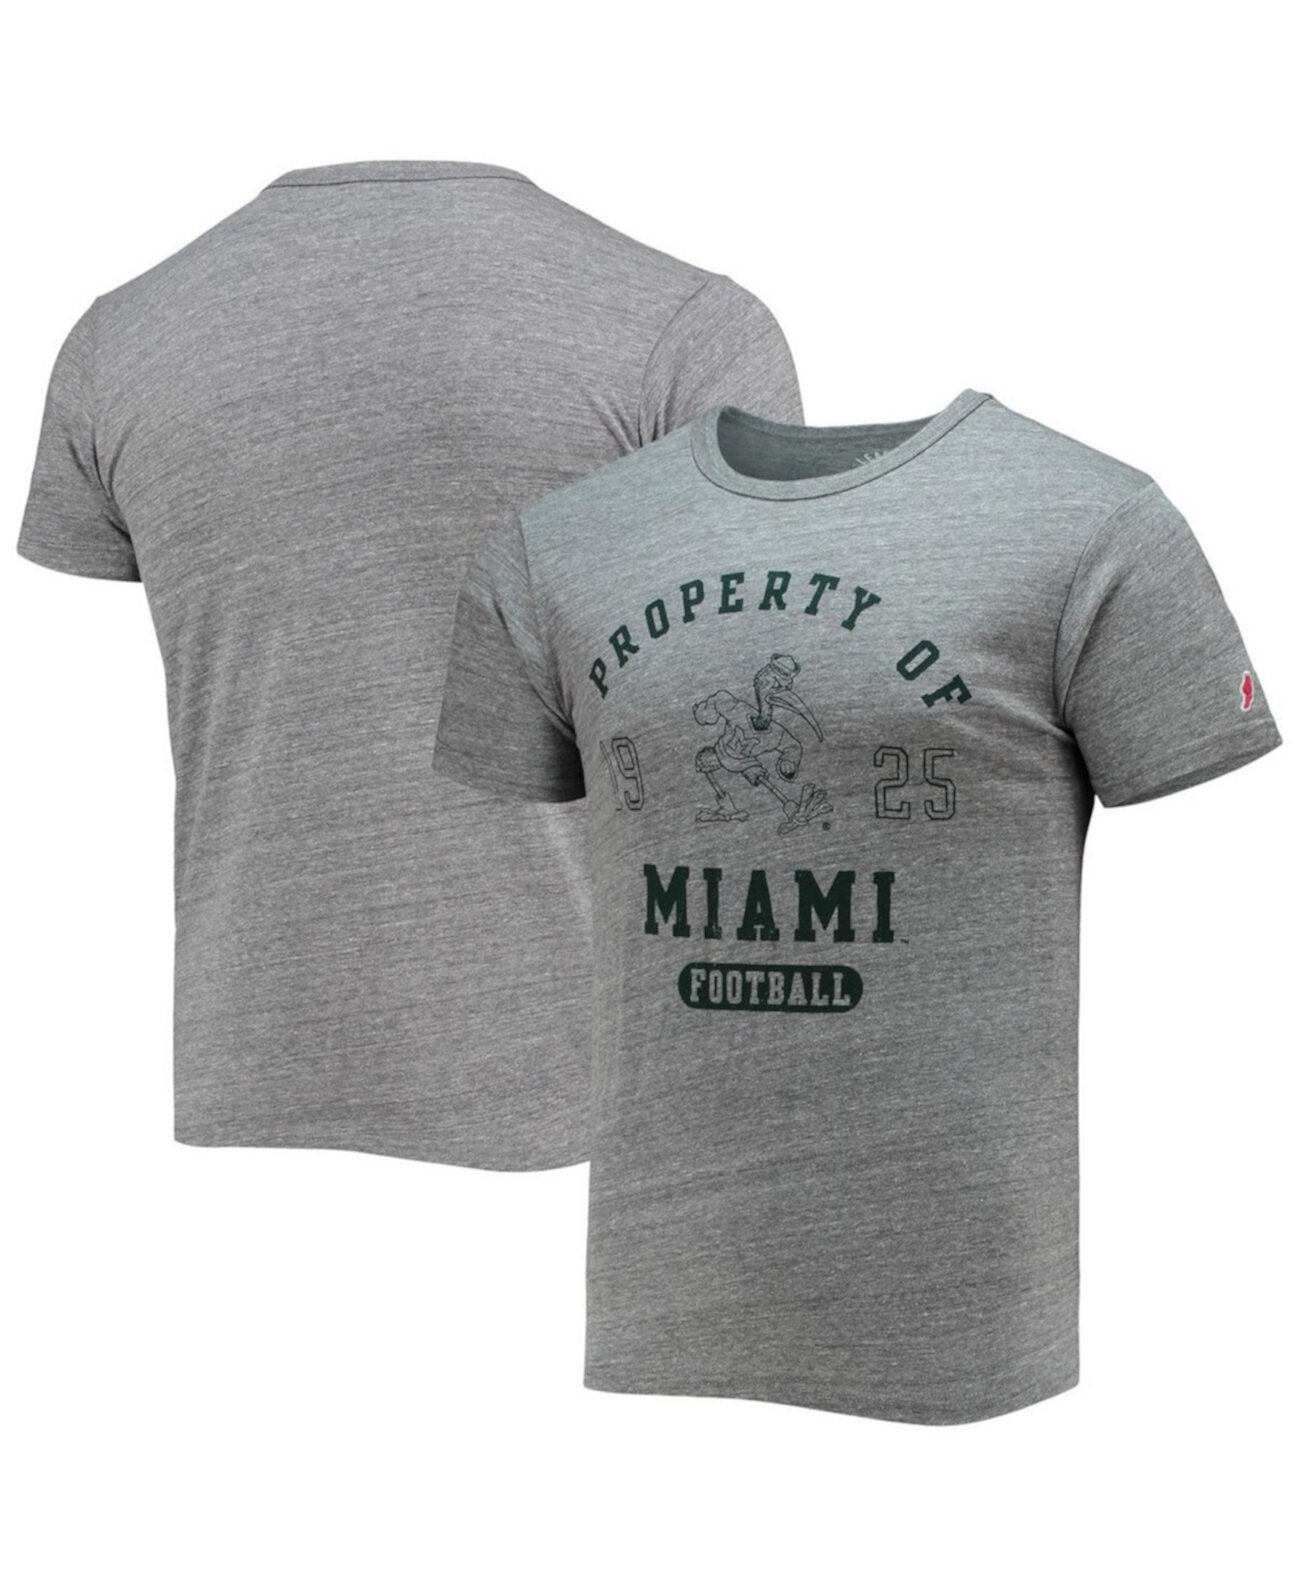 Мужская серая футболка Miami Hurricanes Hail Mary Football Victory Falls Tri-Blend League Collegiate Wear